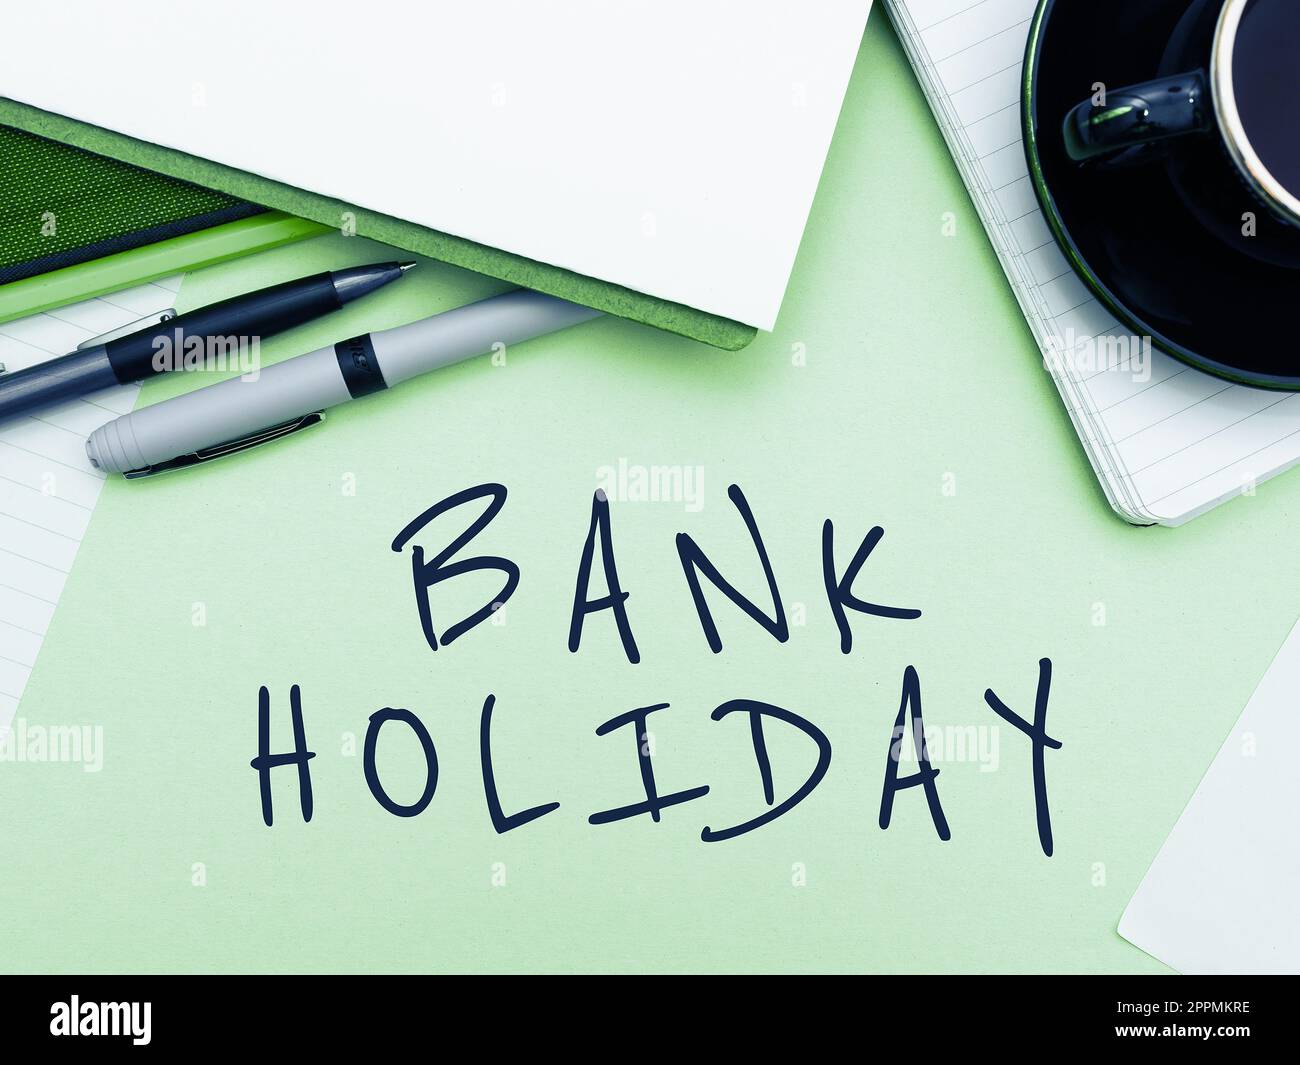 Texte montrant inspiration Bank Holiday. Concept signifiant Un jour où les banques sont officiellement fermées en tant que jour férié Banque D'Images